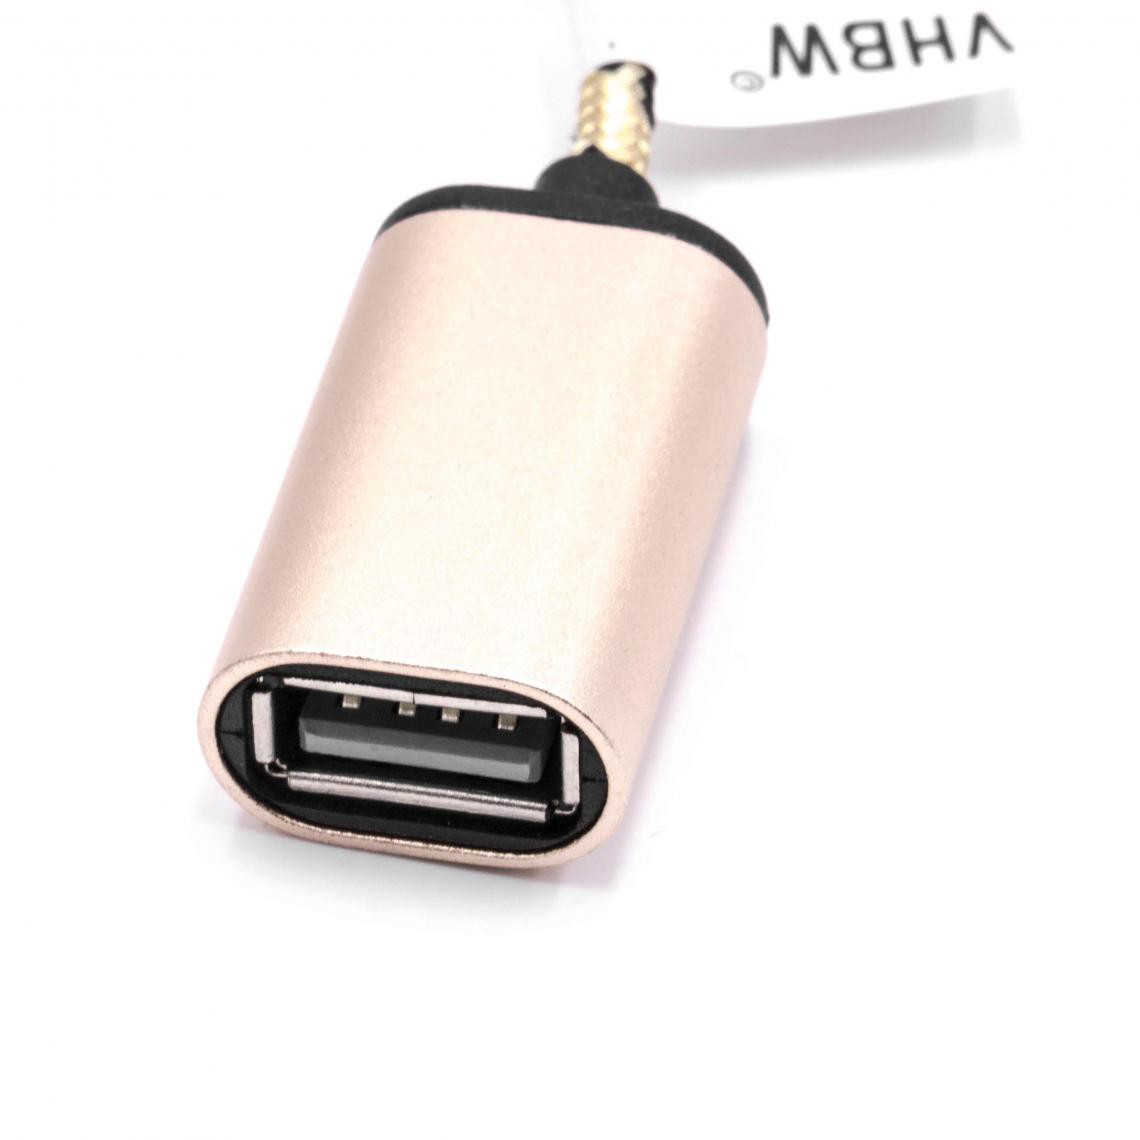 Vhbw - vhbw câble adaptateur USB type C sur USB 2.0 pour Nokia 7, 8 - Accessoires alimentation